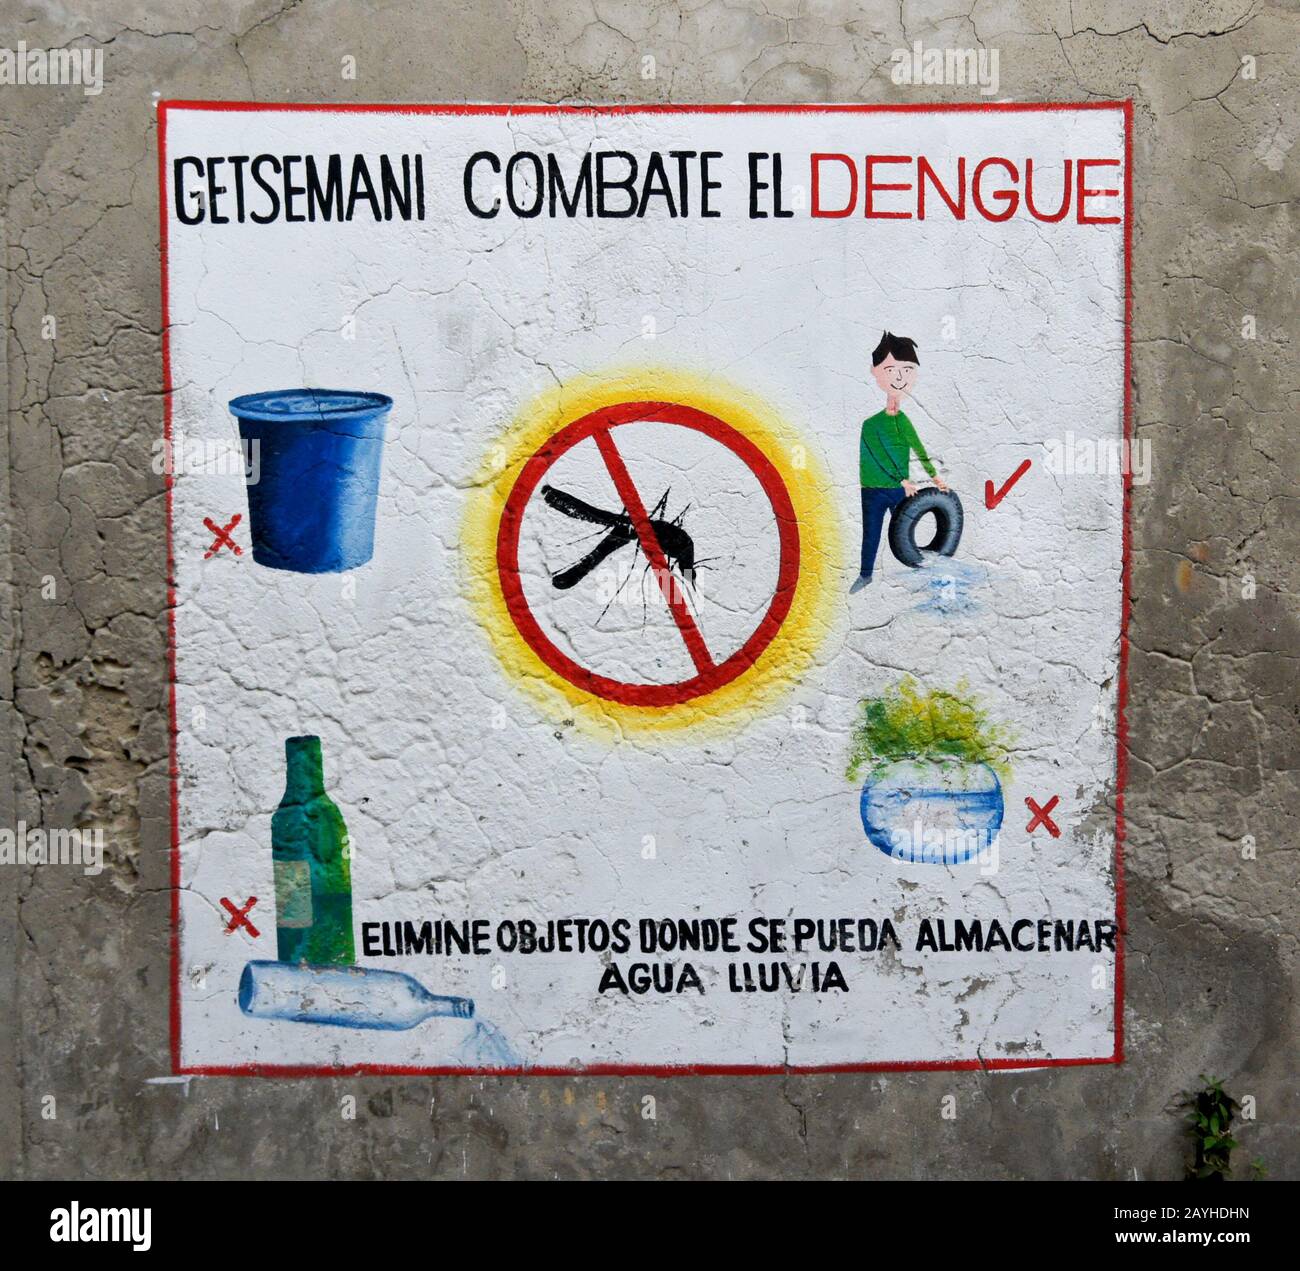 L'information (en espagnol) peinte sur un mur extérieur encourage l'élimination des objets qui détiennent l'eau debout et attirent les moustiques qui causent la dengue Banque D'Images